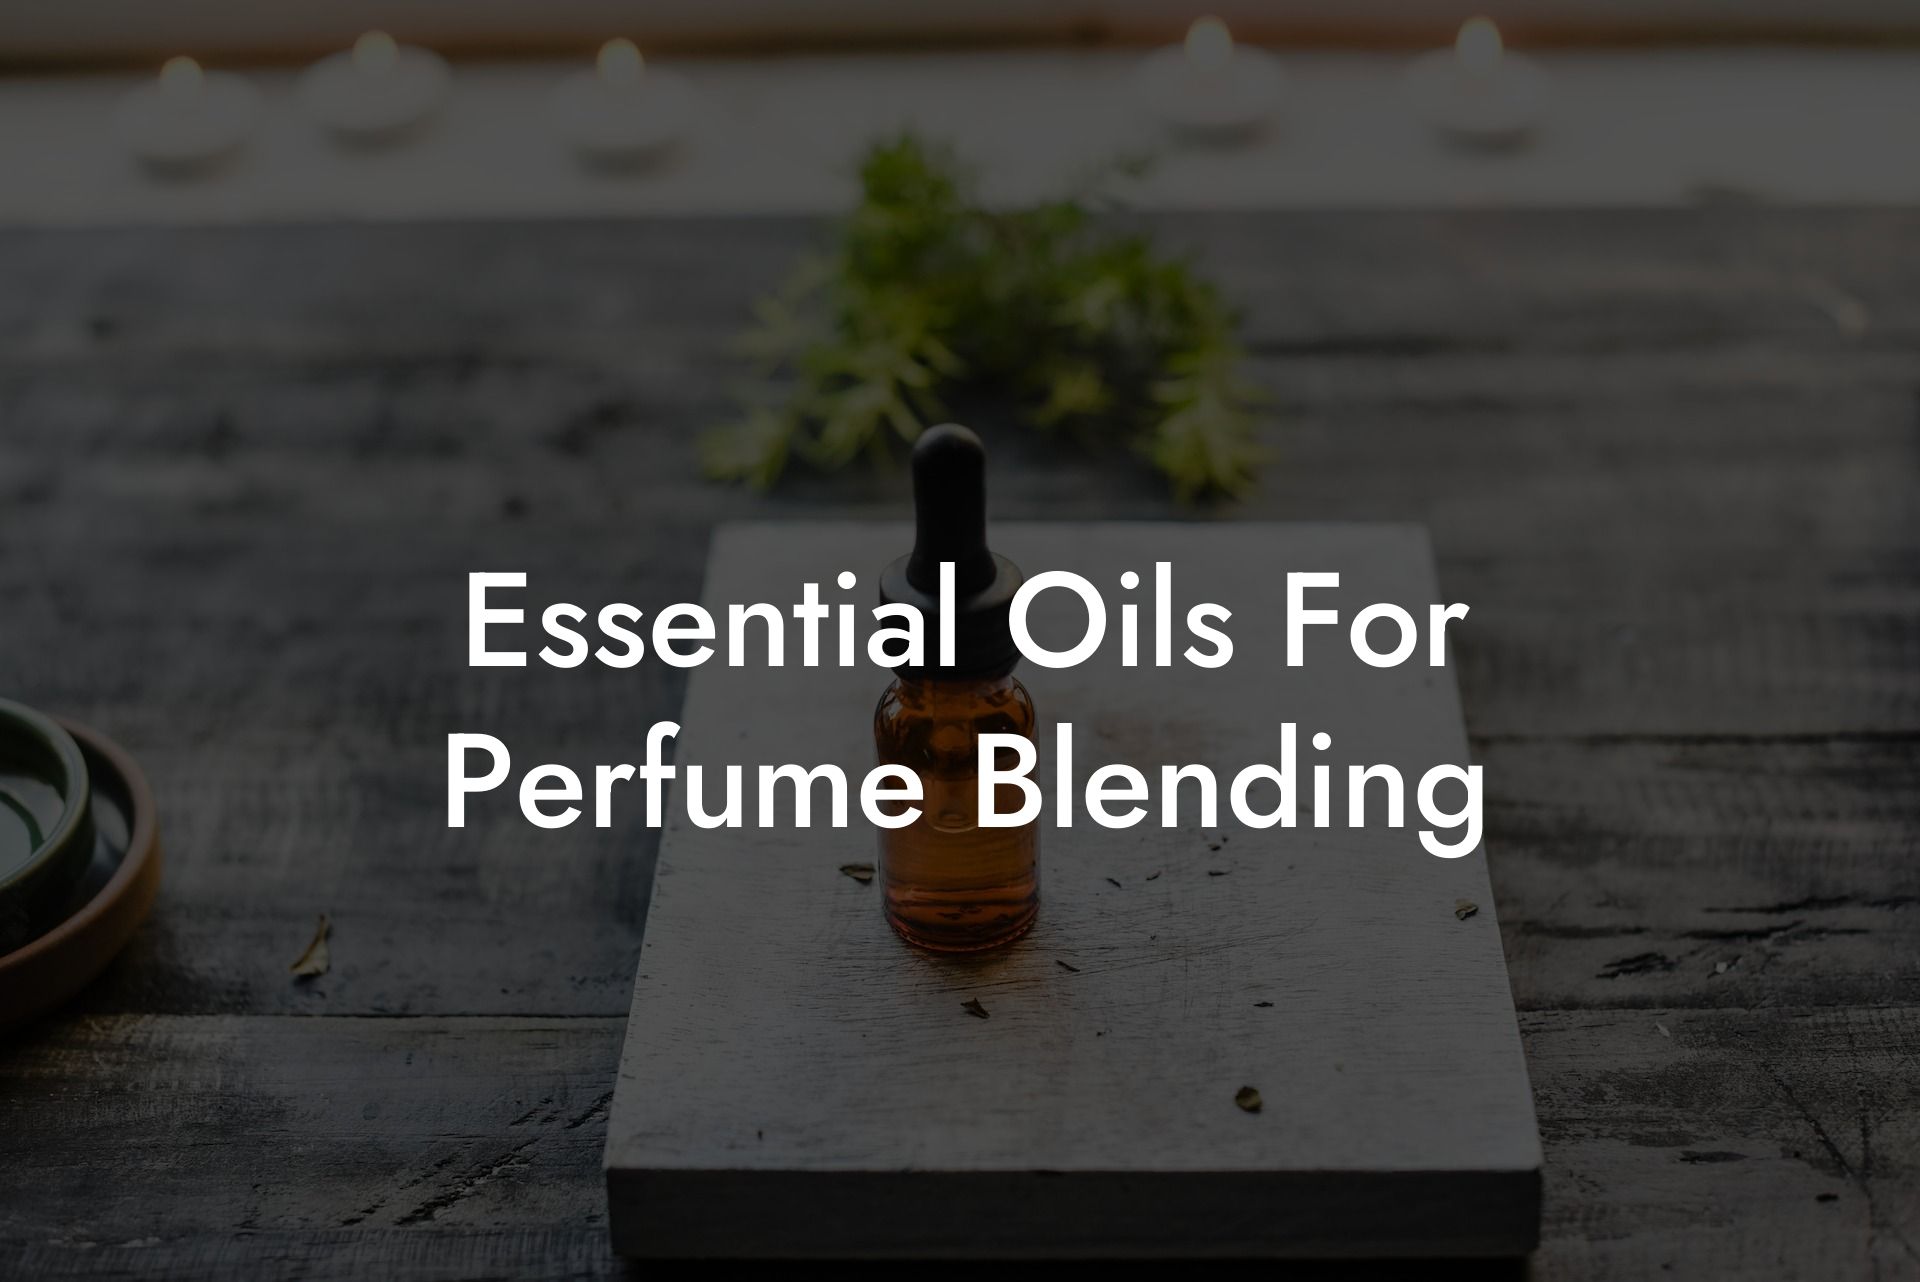 Essential Oils For Perfume Blending